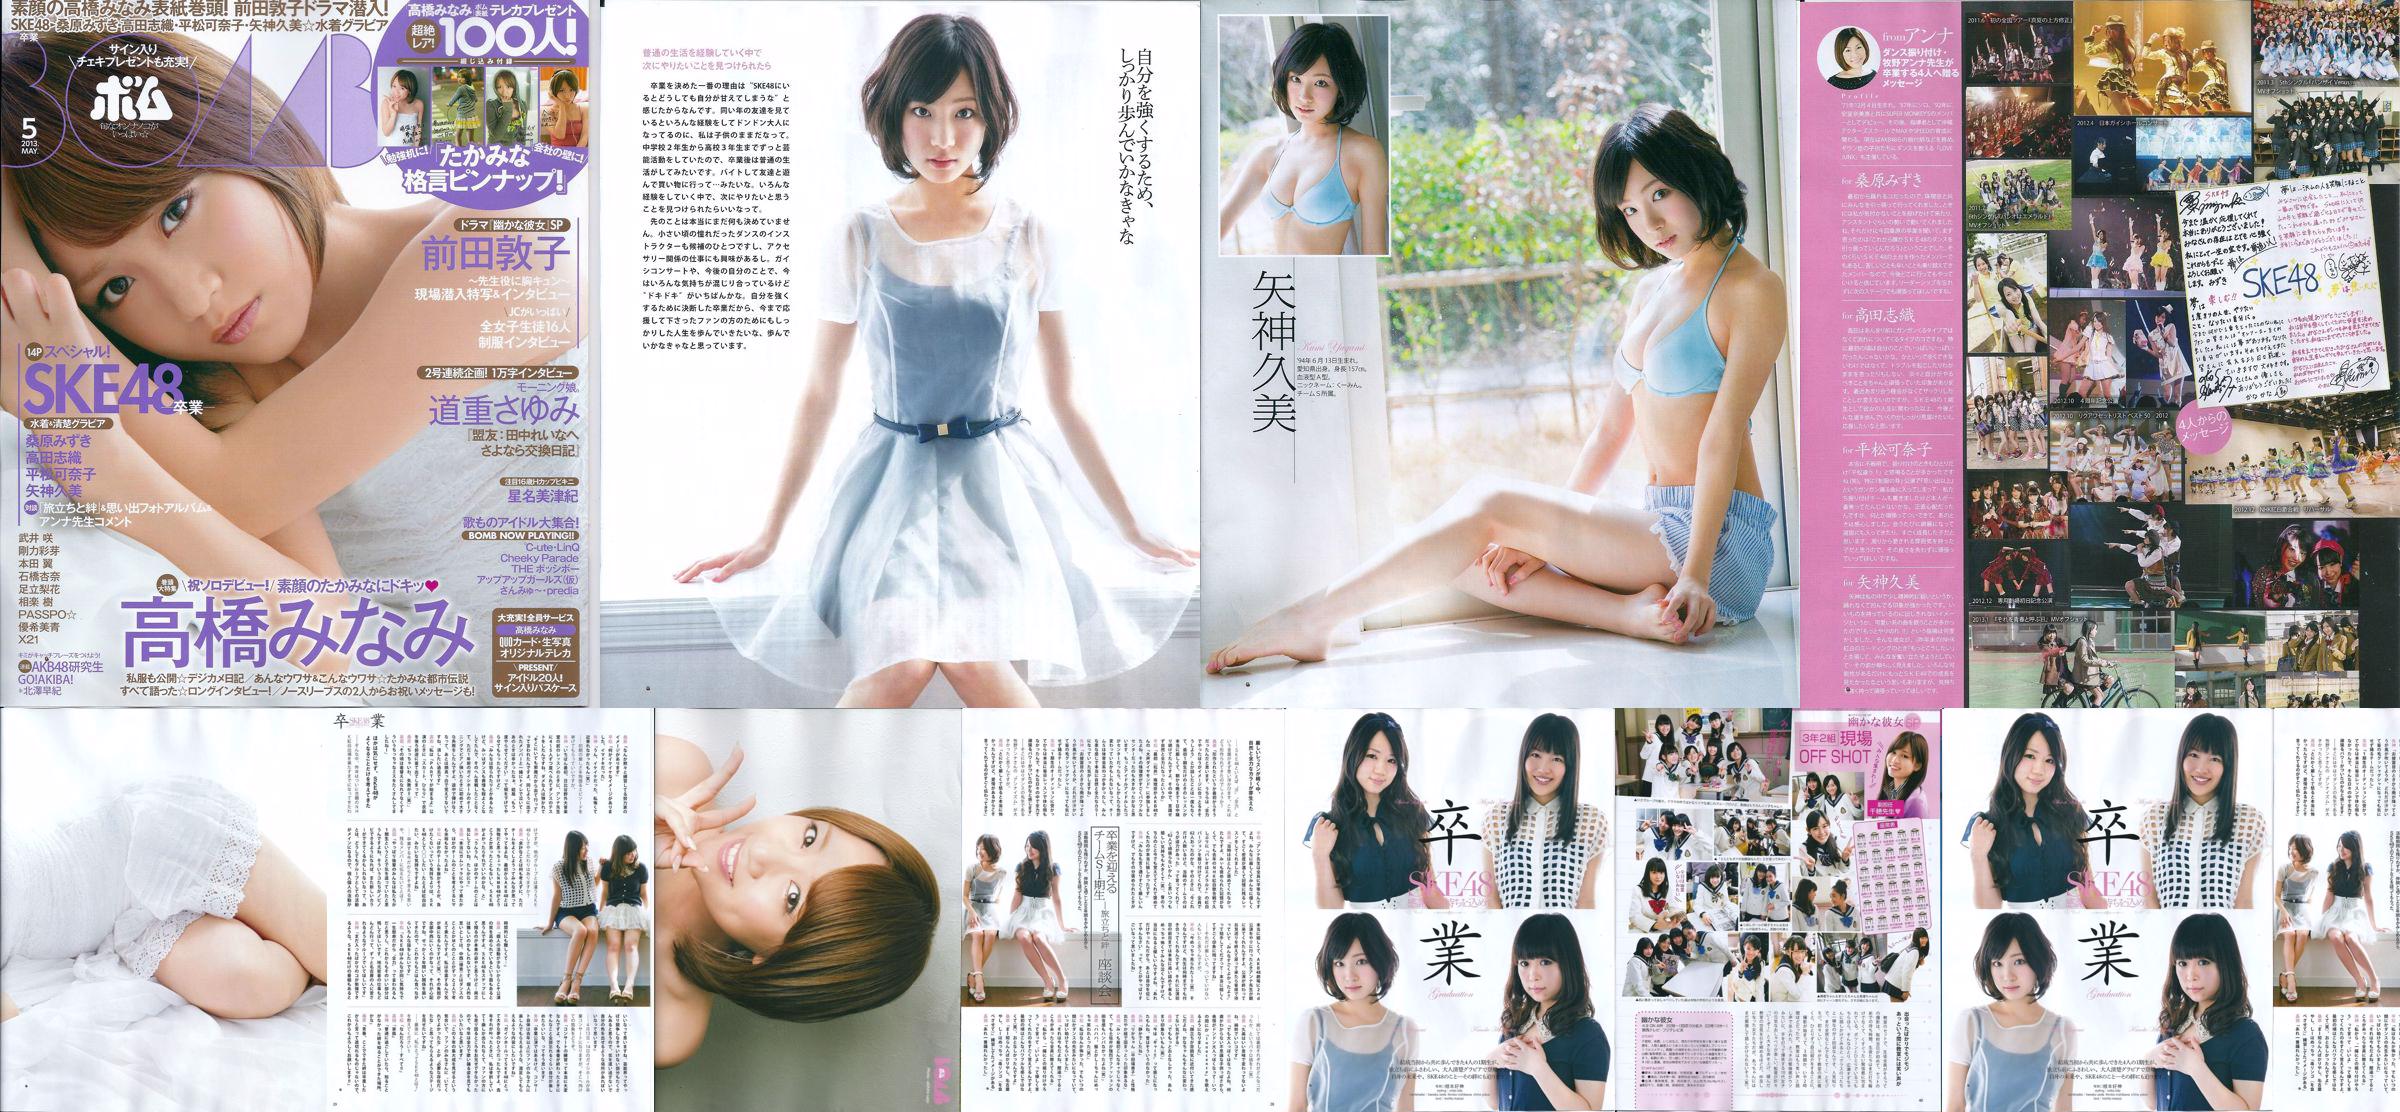 [Bomb Magazine] 2013 No.05 Kumi Yagami Minami Takahashi Atsuko Maeda Photo No.a4867a Page 7